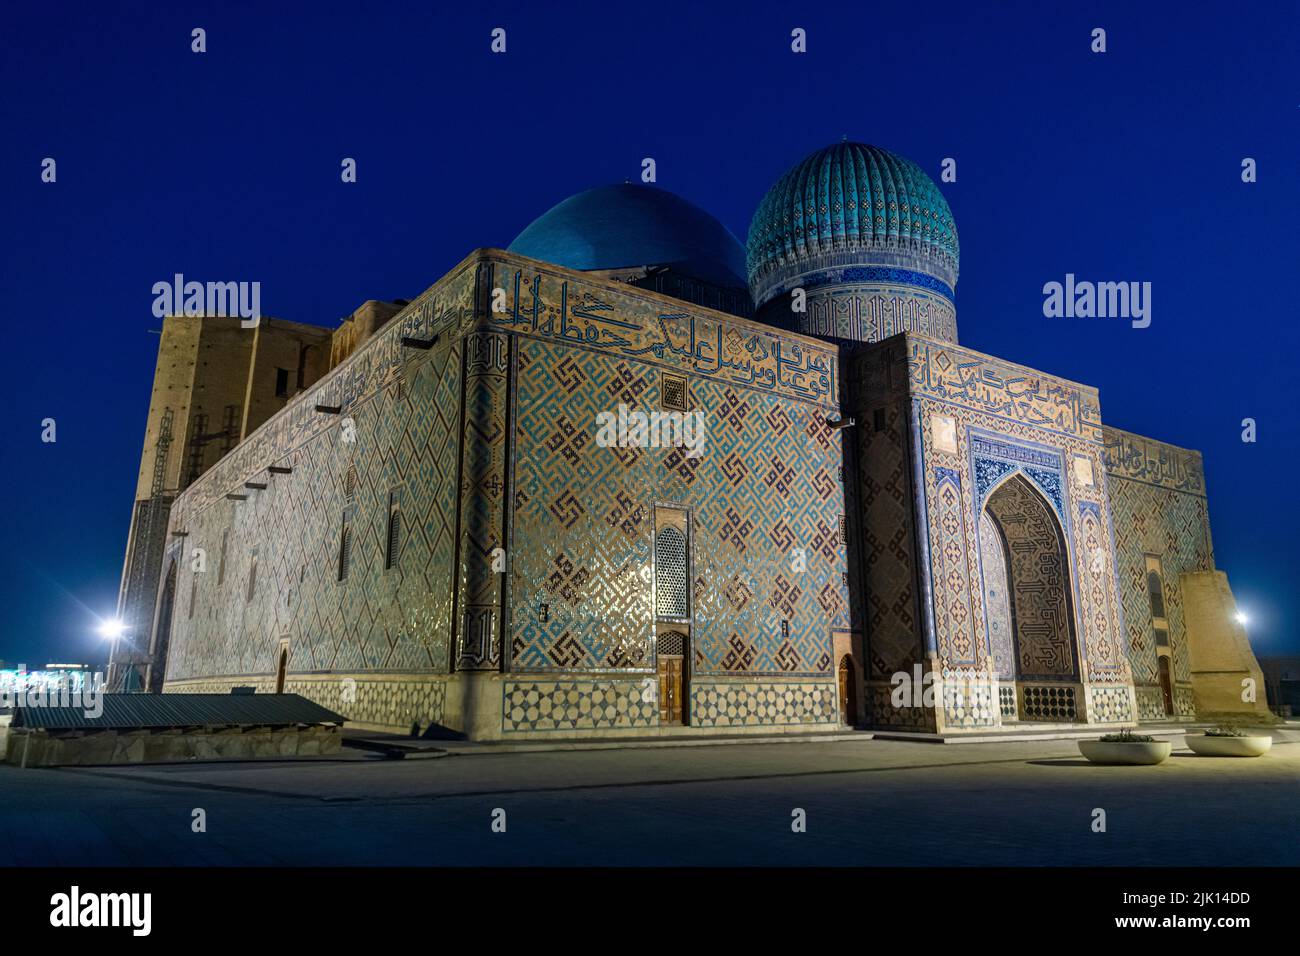 Photo nocturne du mausolée de Khoja Ahmed Yasawi, site du patrimoine mondial de l'UNESCO, Turkestan, Kazakhstan, Asie centrale, Asie Banque D'Images